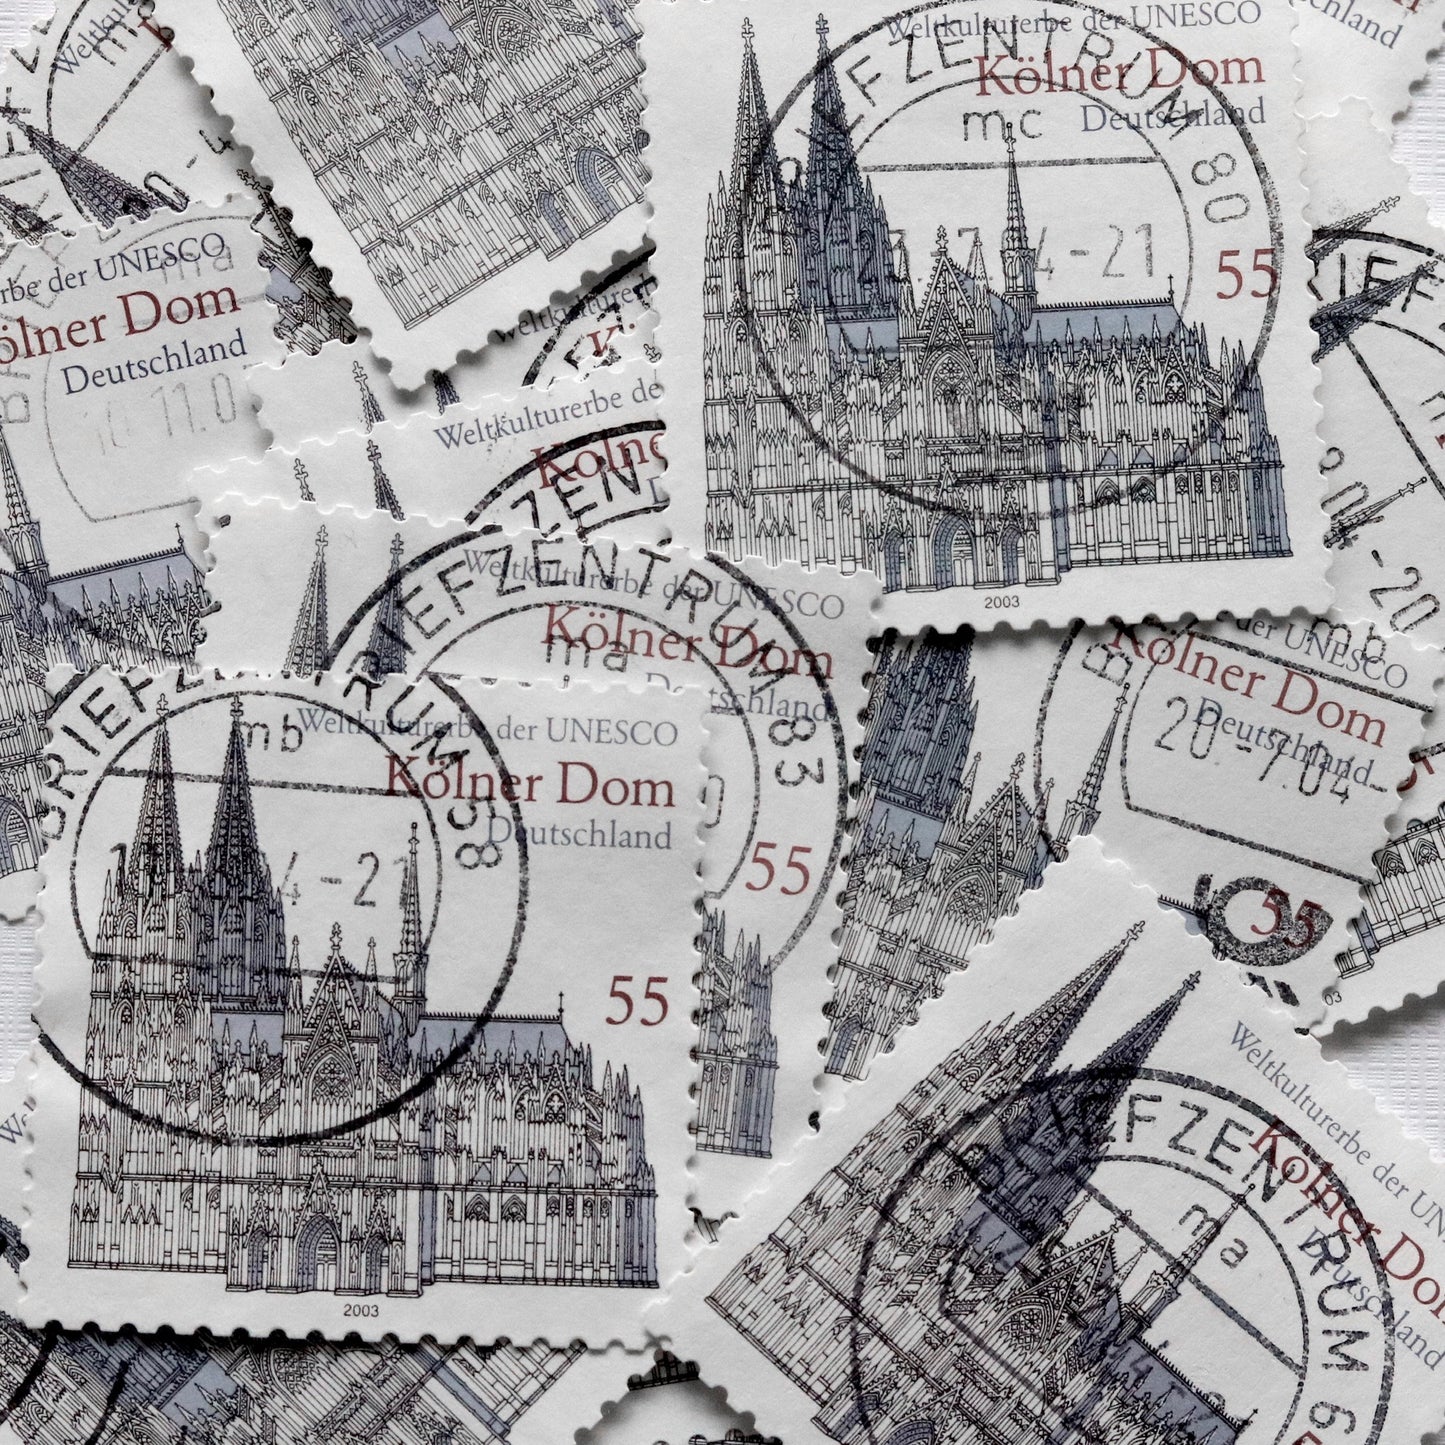 Armband mit schwarz-weißer Kölner Dom Briefmarke